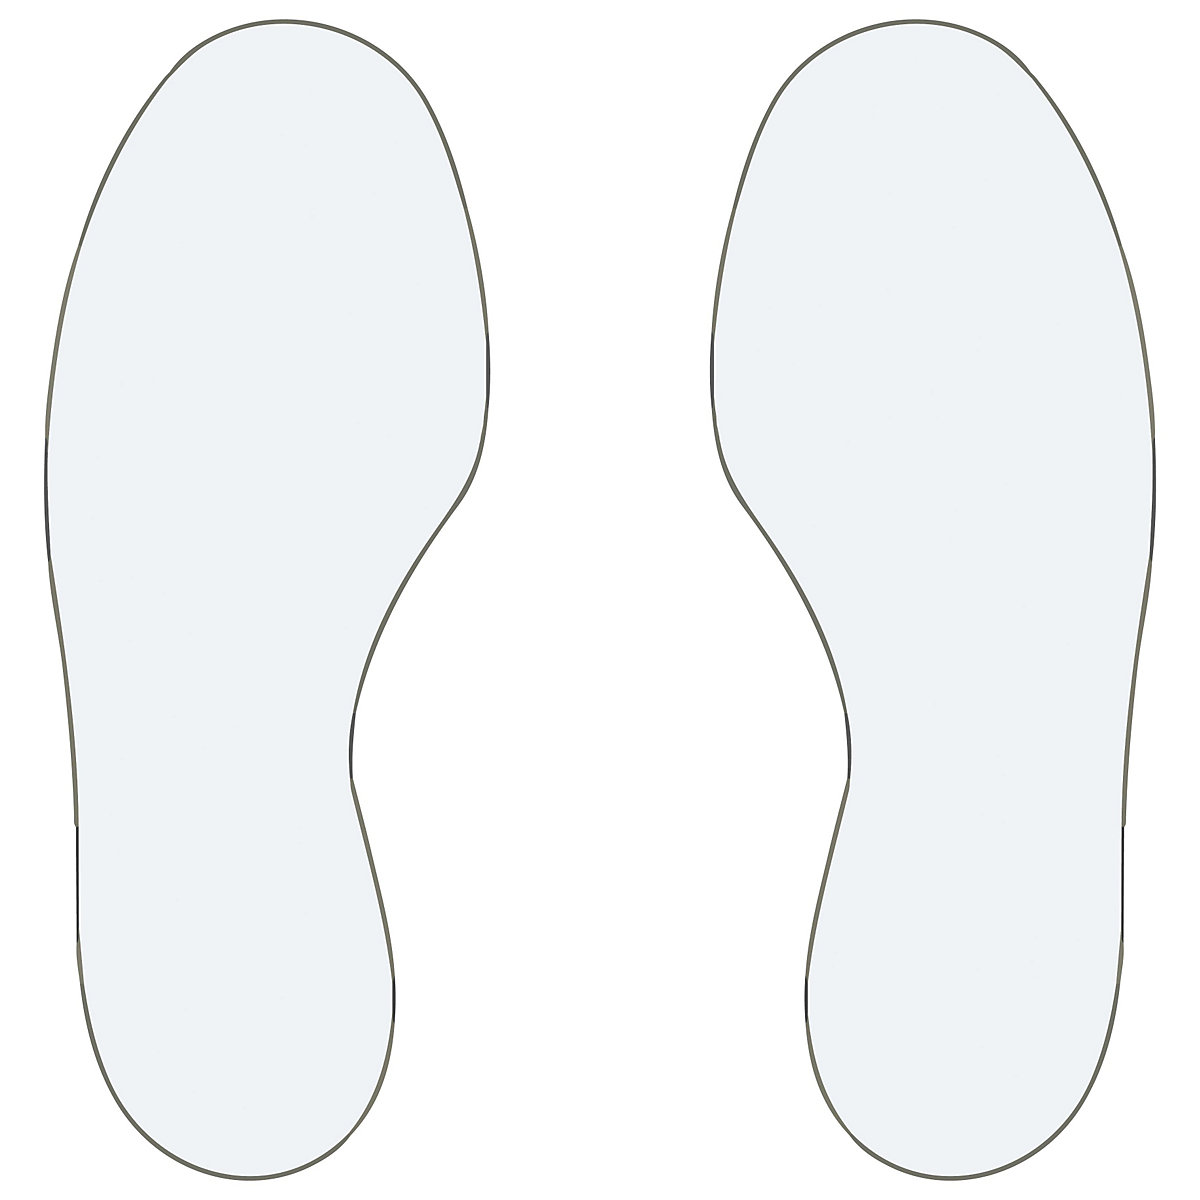 PVC floor markings, feet, 25 right / 25 left, pack of 50, white-5